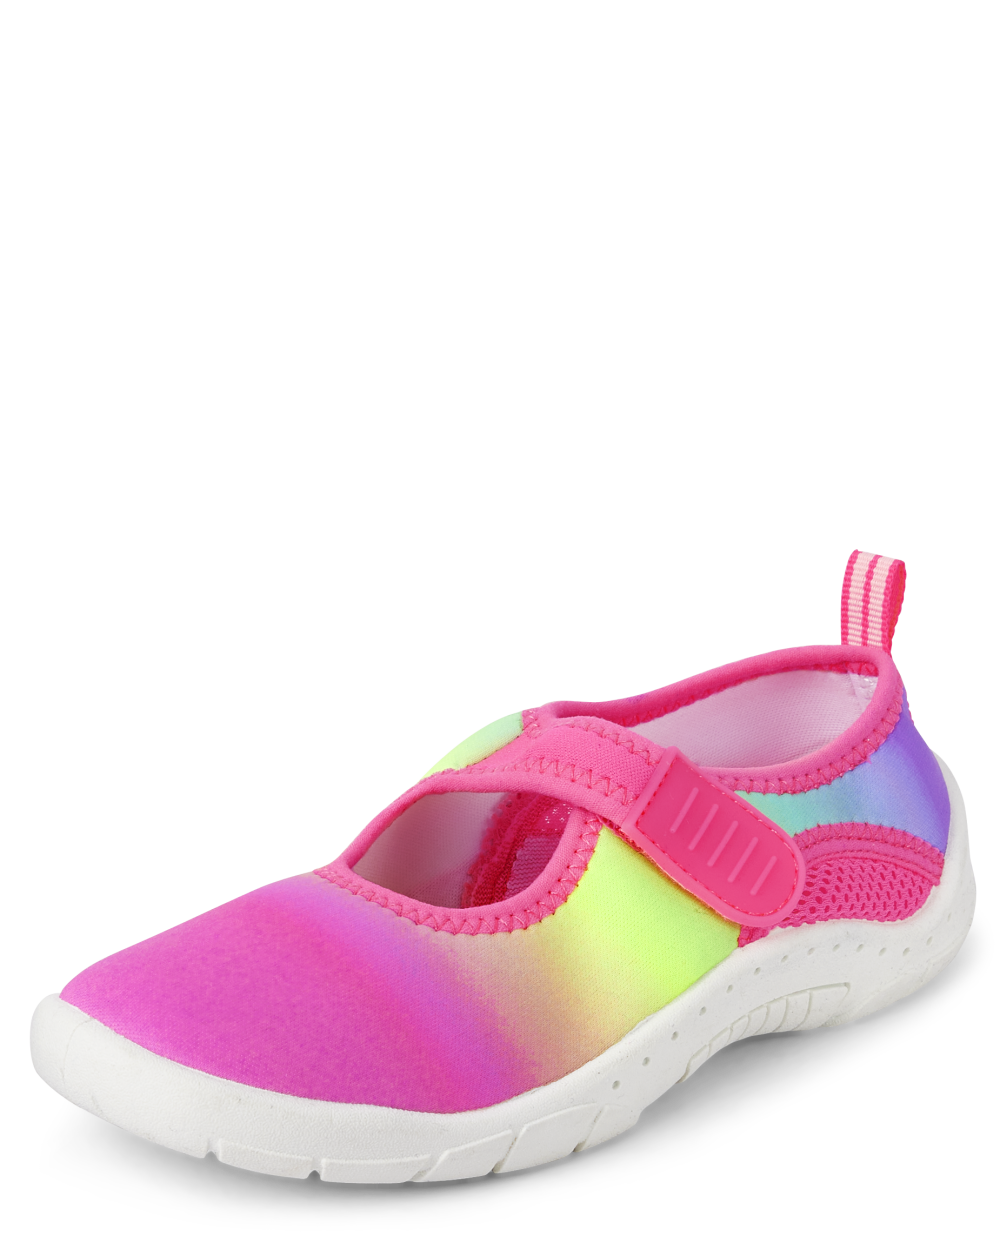 Girls Rainbow Tie Dye Water Shoes - multi clr